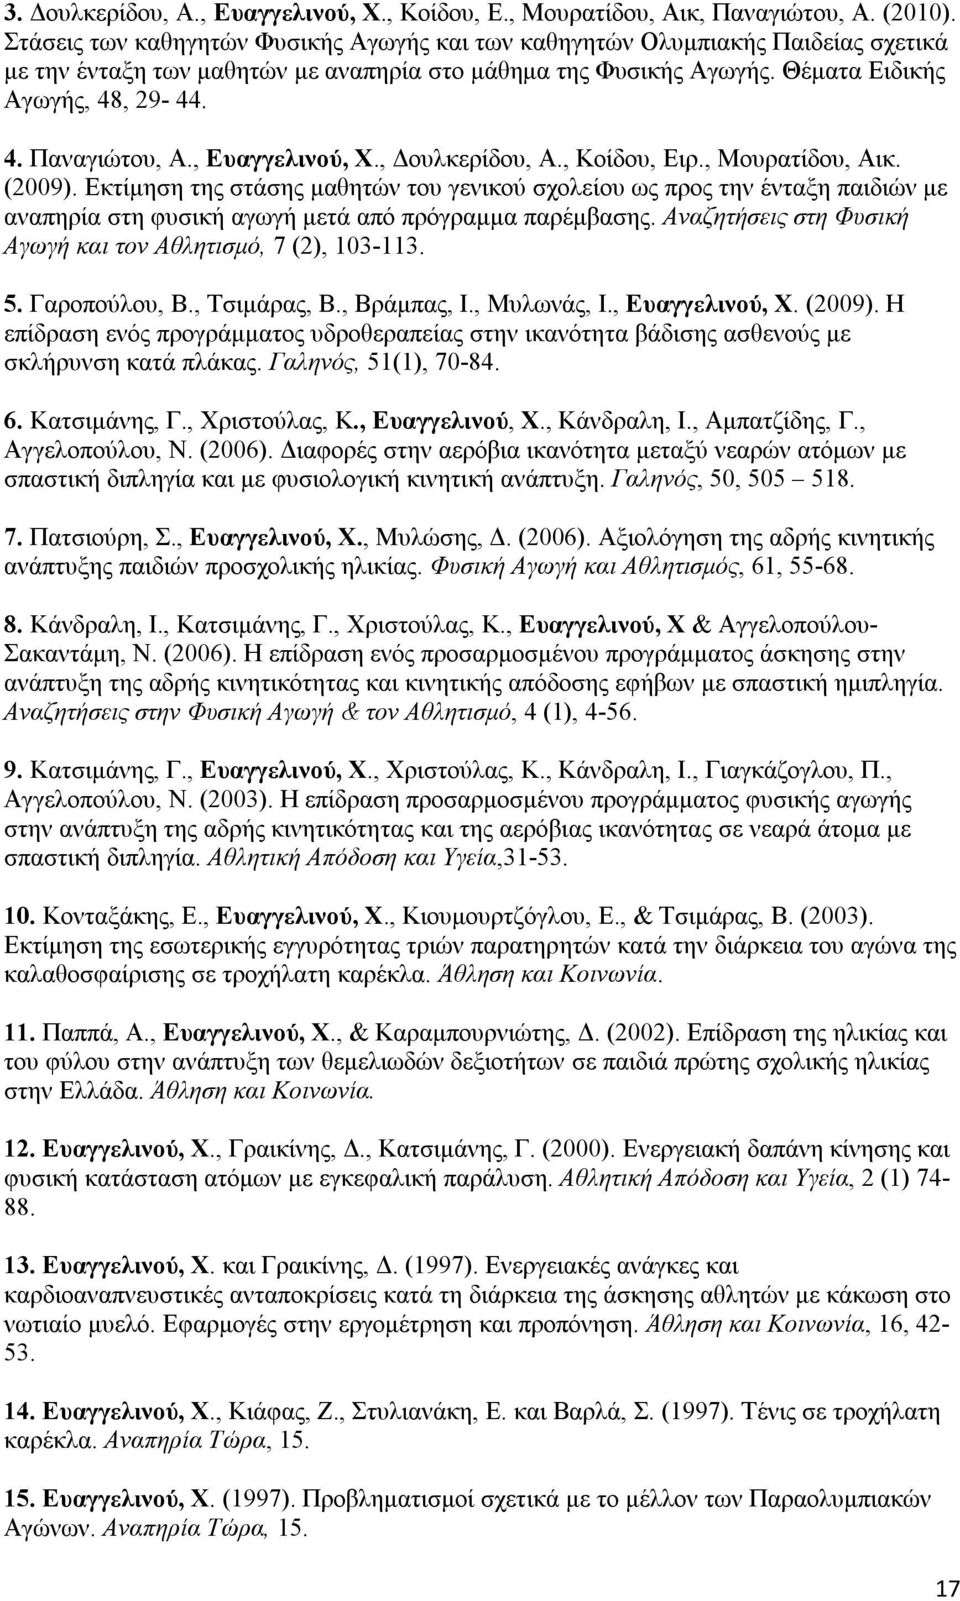 , Ευαγγελινού, Χ., Δουλκερίδου, Α., Κοίδου, Ειρ., Μουρατίδου, Αικ. (2009).